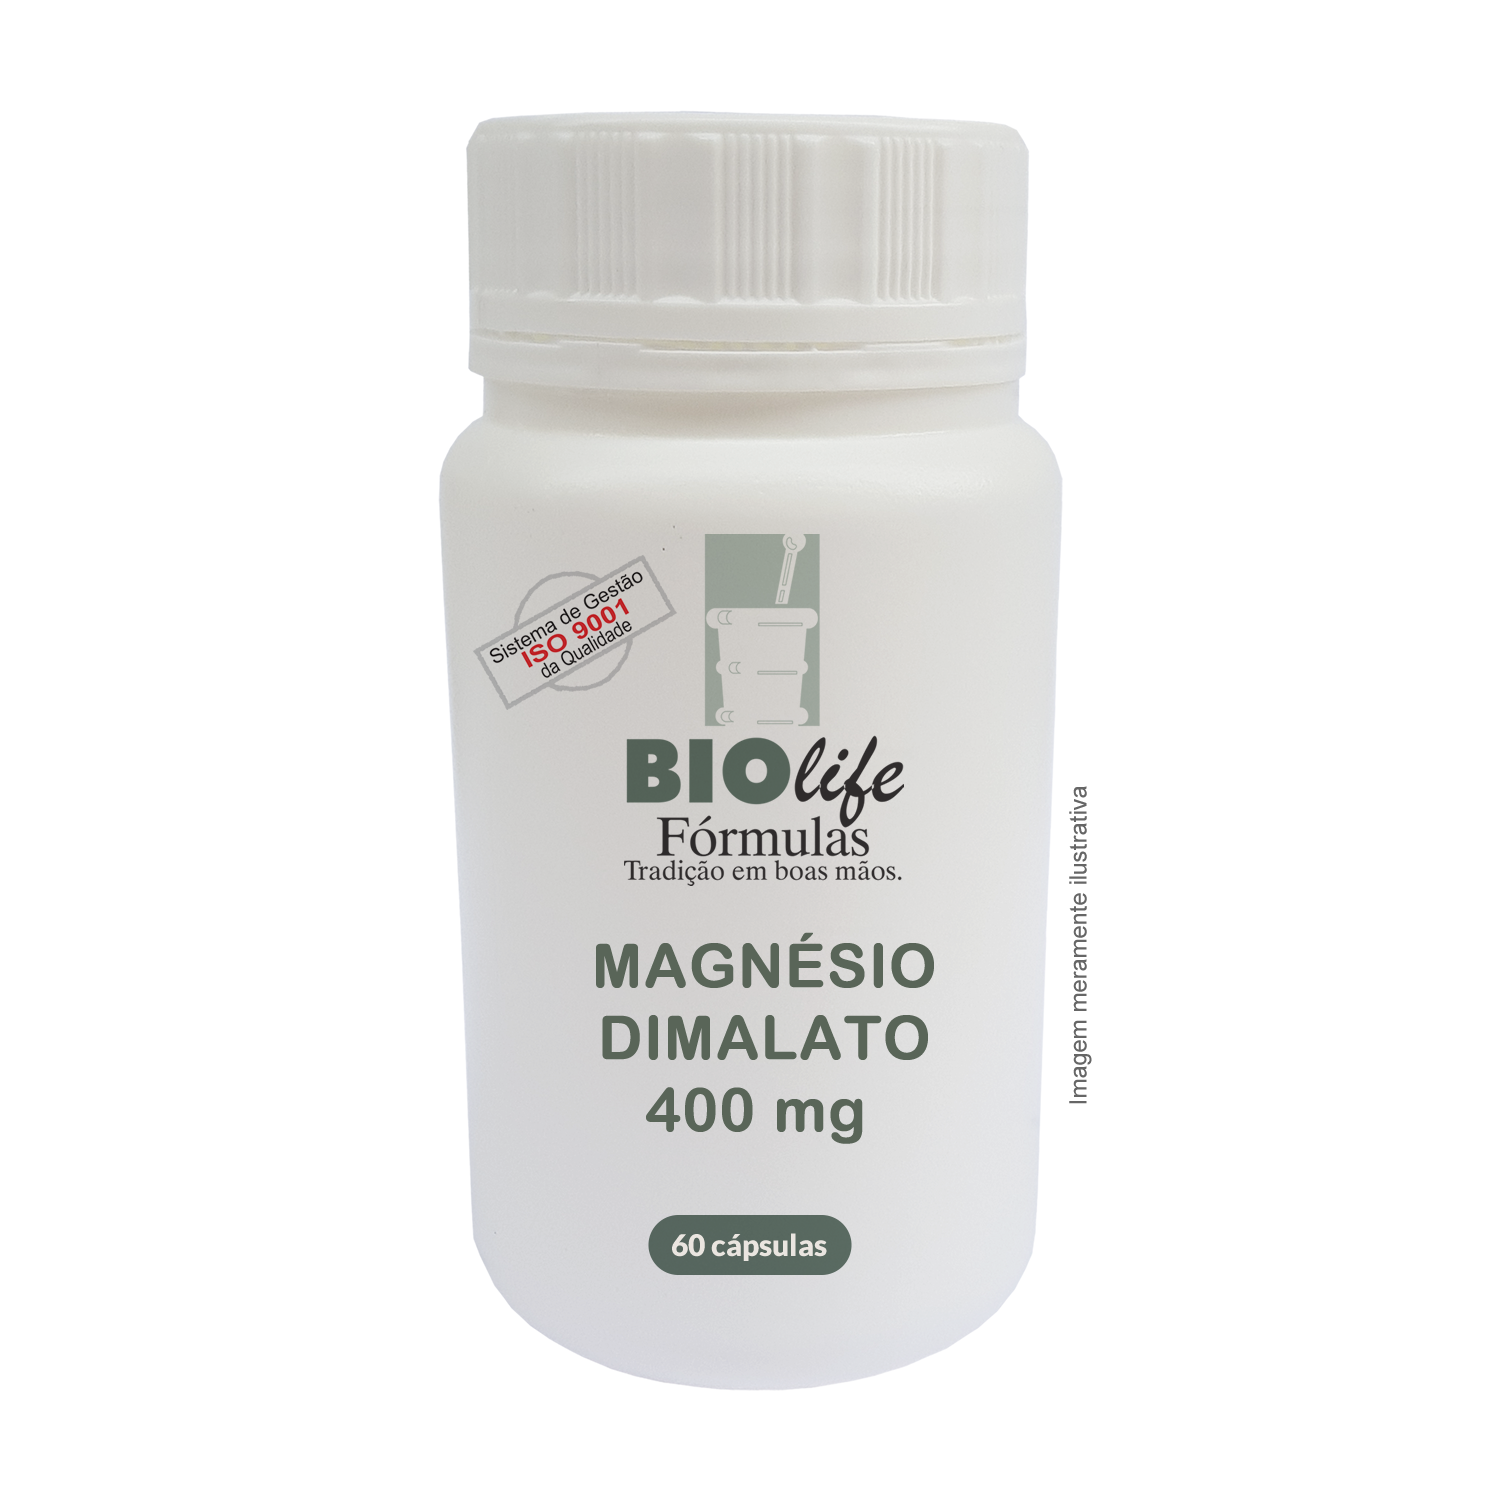 MAGNÉSIO DIMALATO 400 mg - 60 cápsulas - BioLife